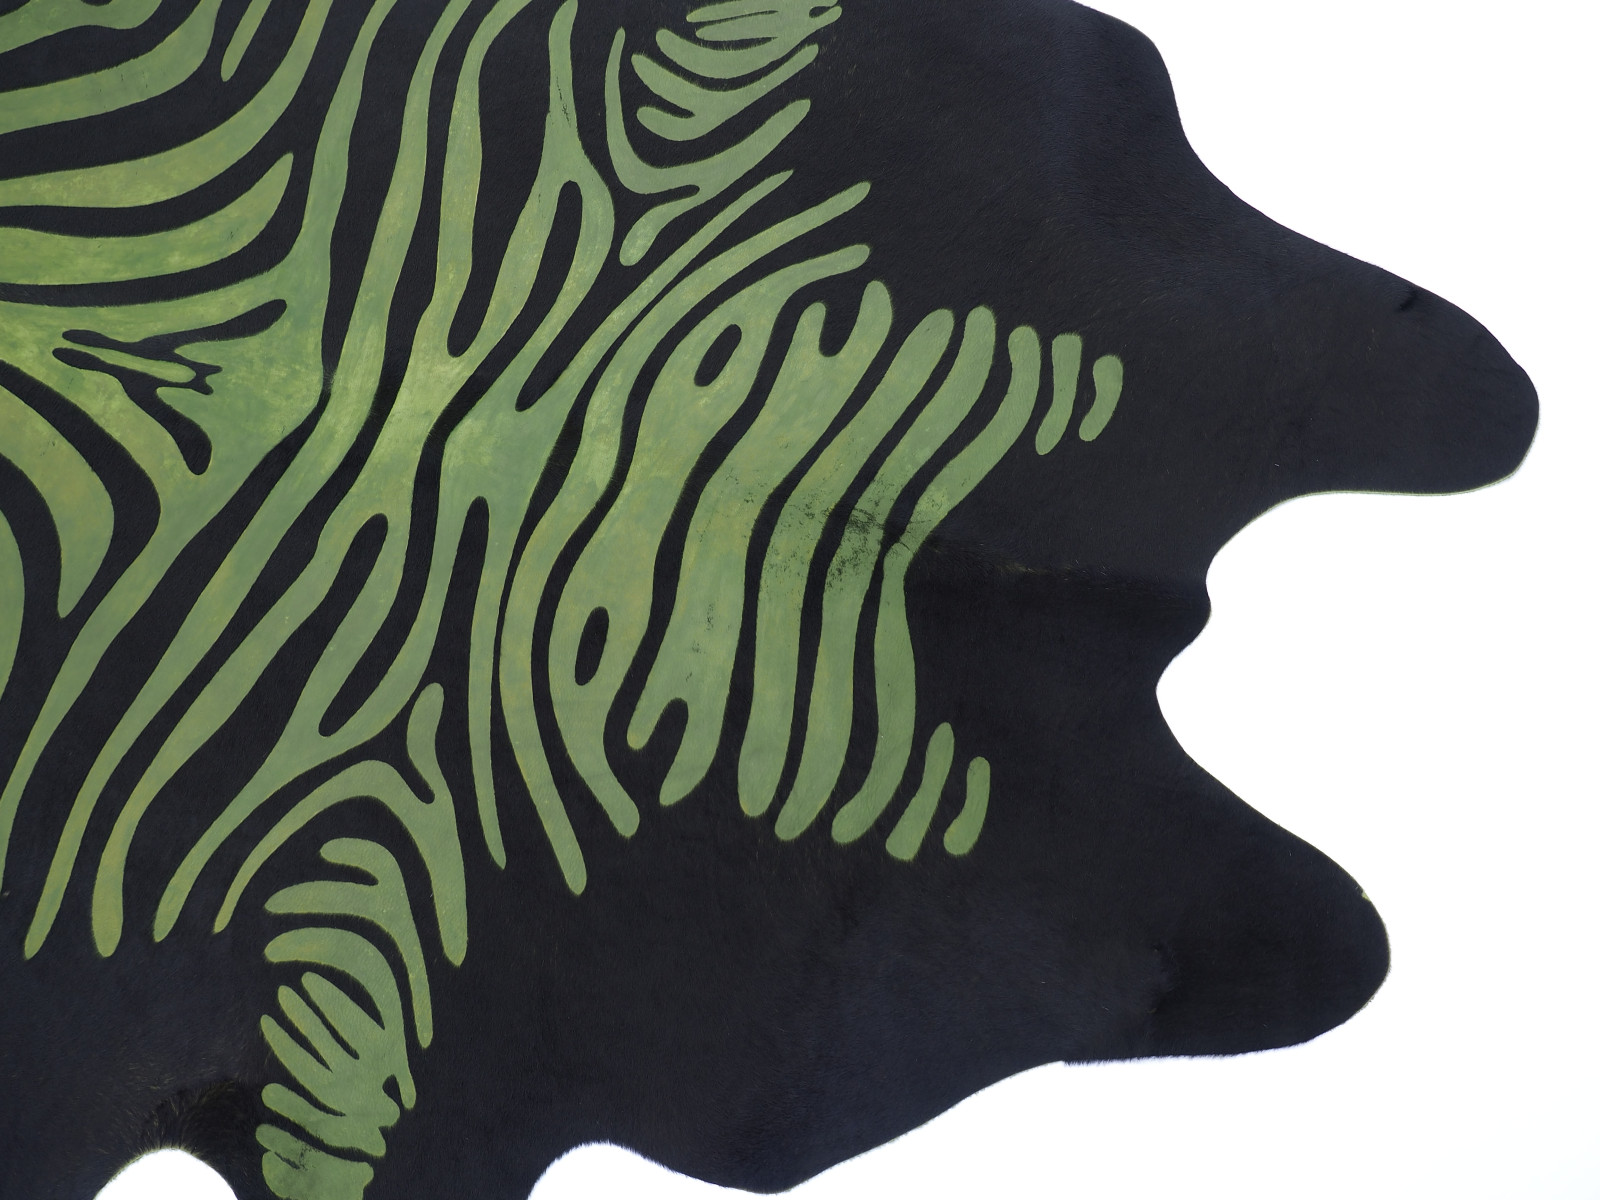  Шкура коровы под винтажную Зебру матовая зеленая арт.: 29068